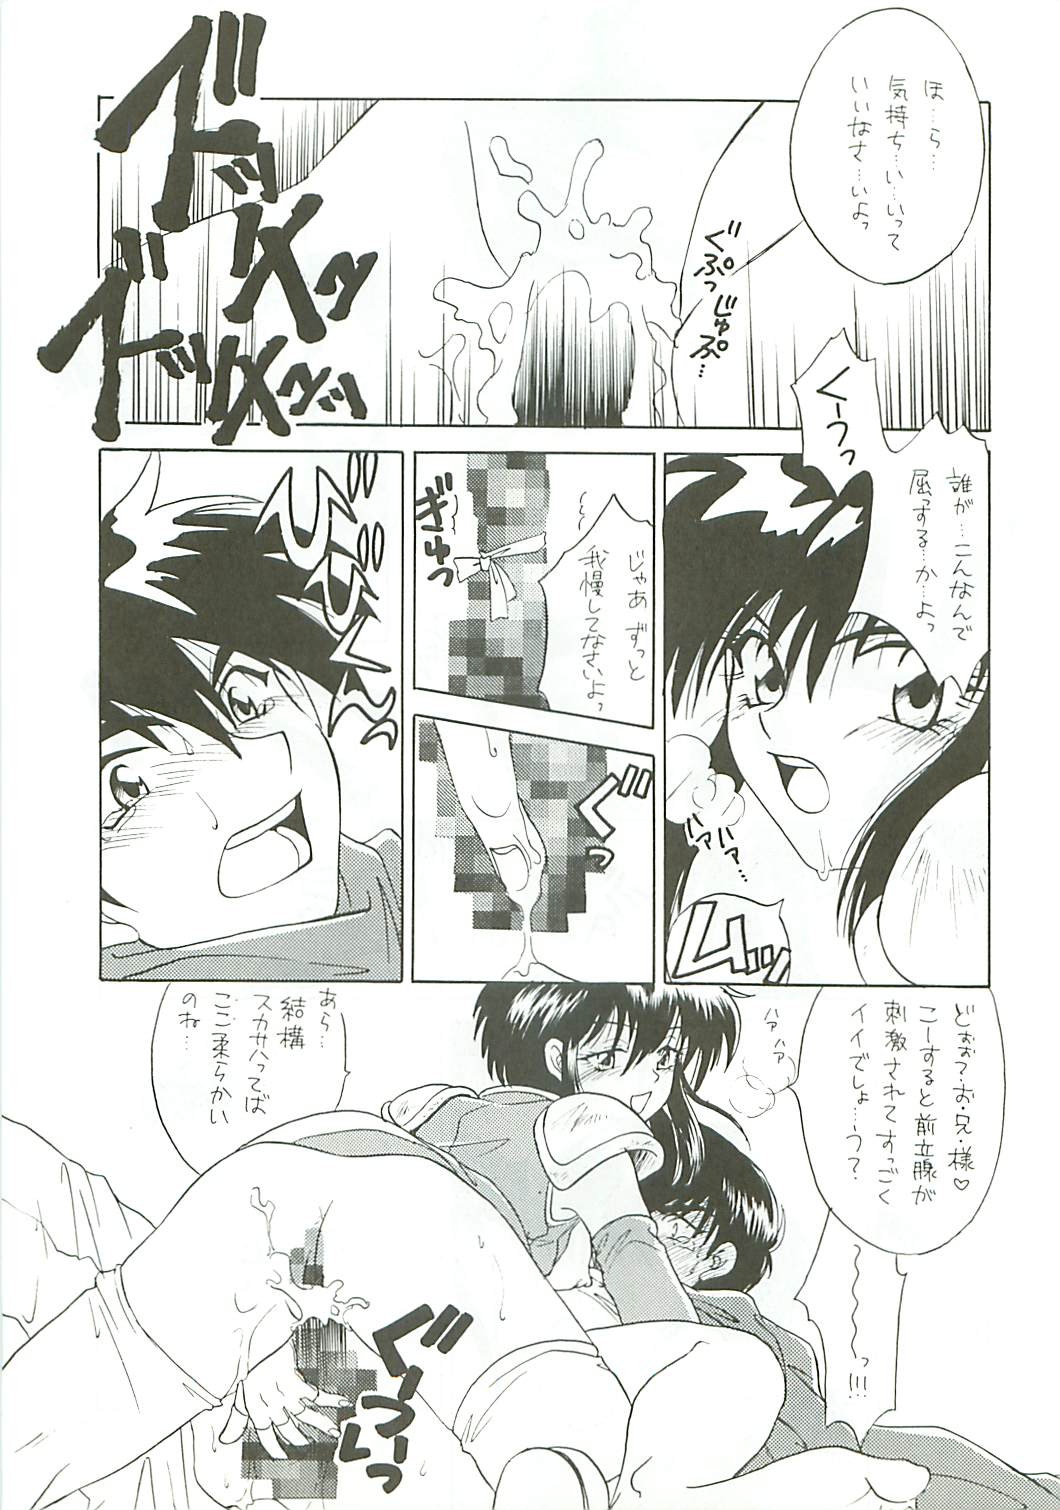 [DARK WATER] Seisen no keifu page 11 full